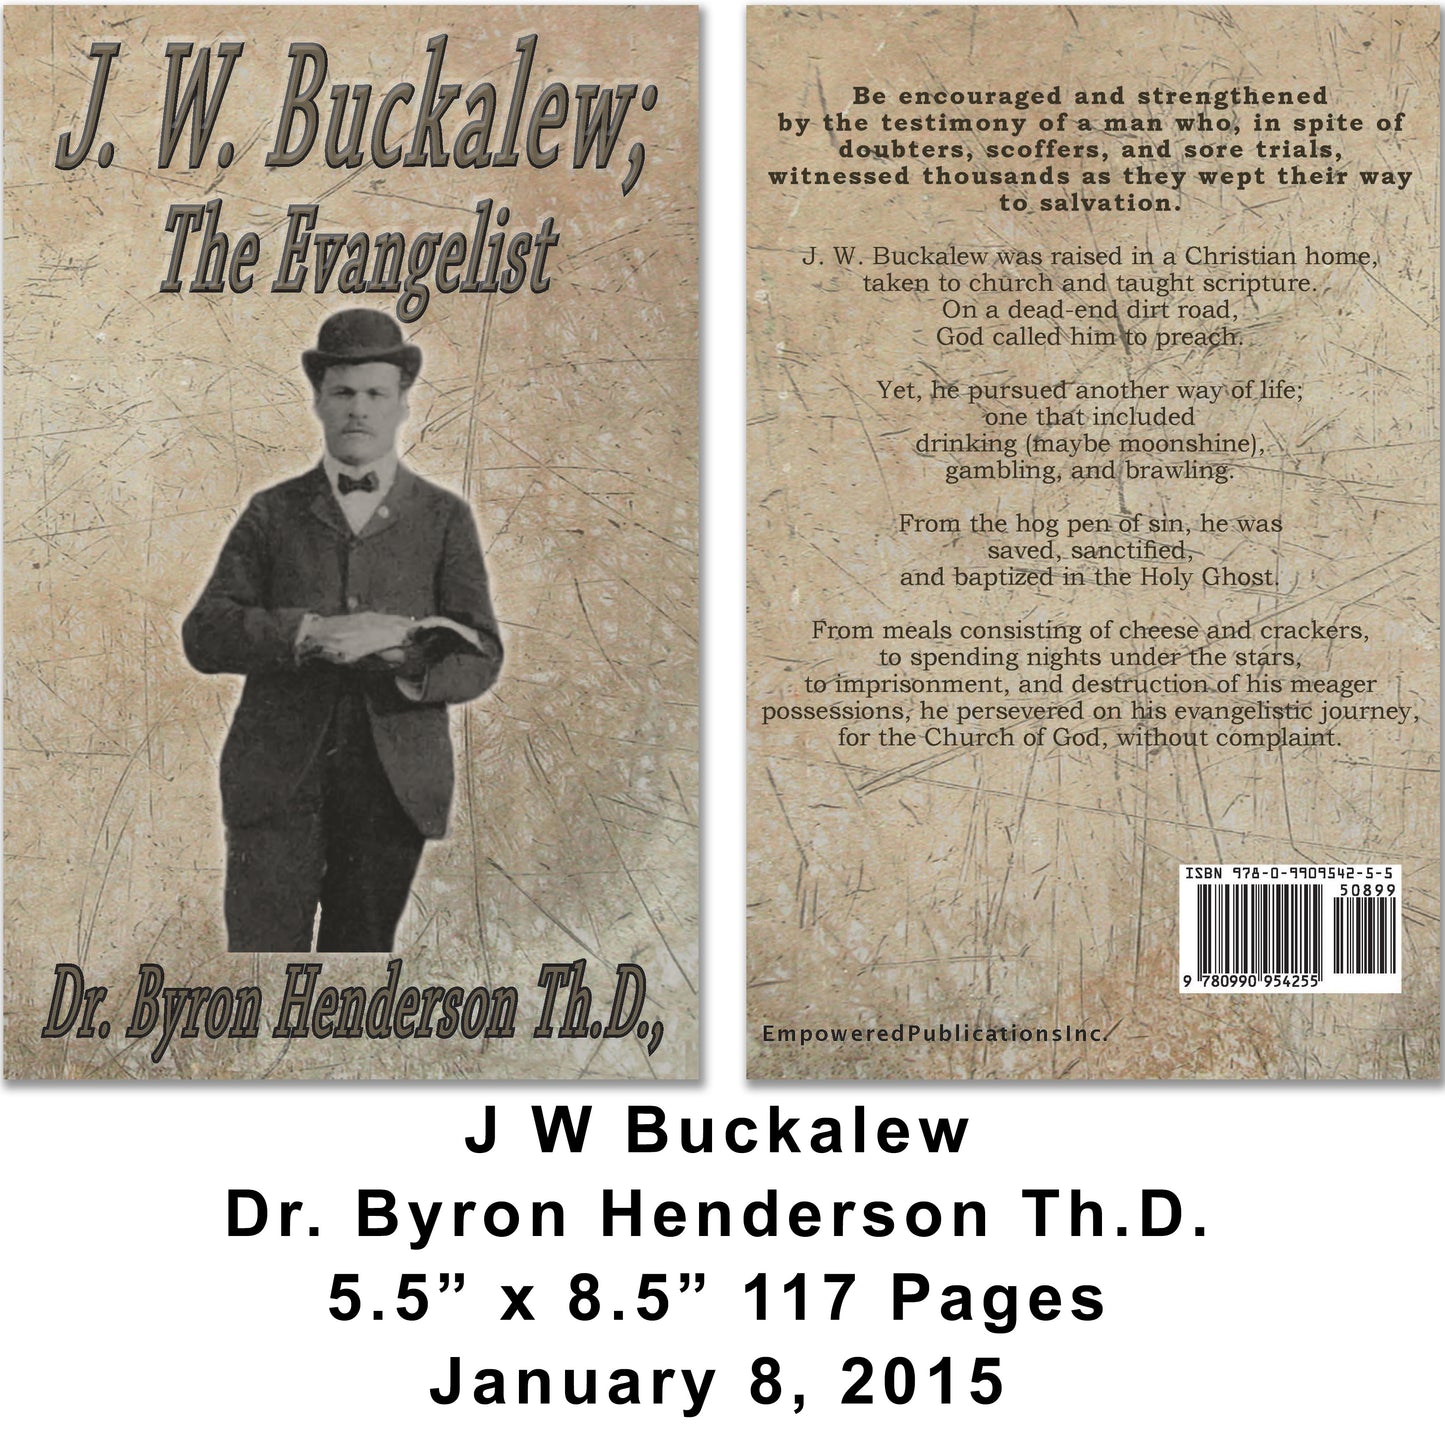 J. W. Buckalew